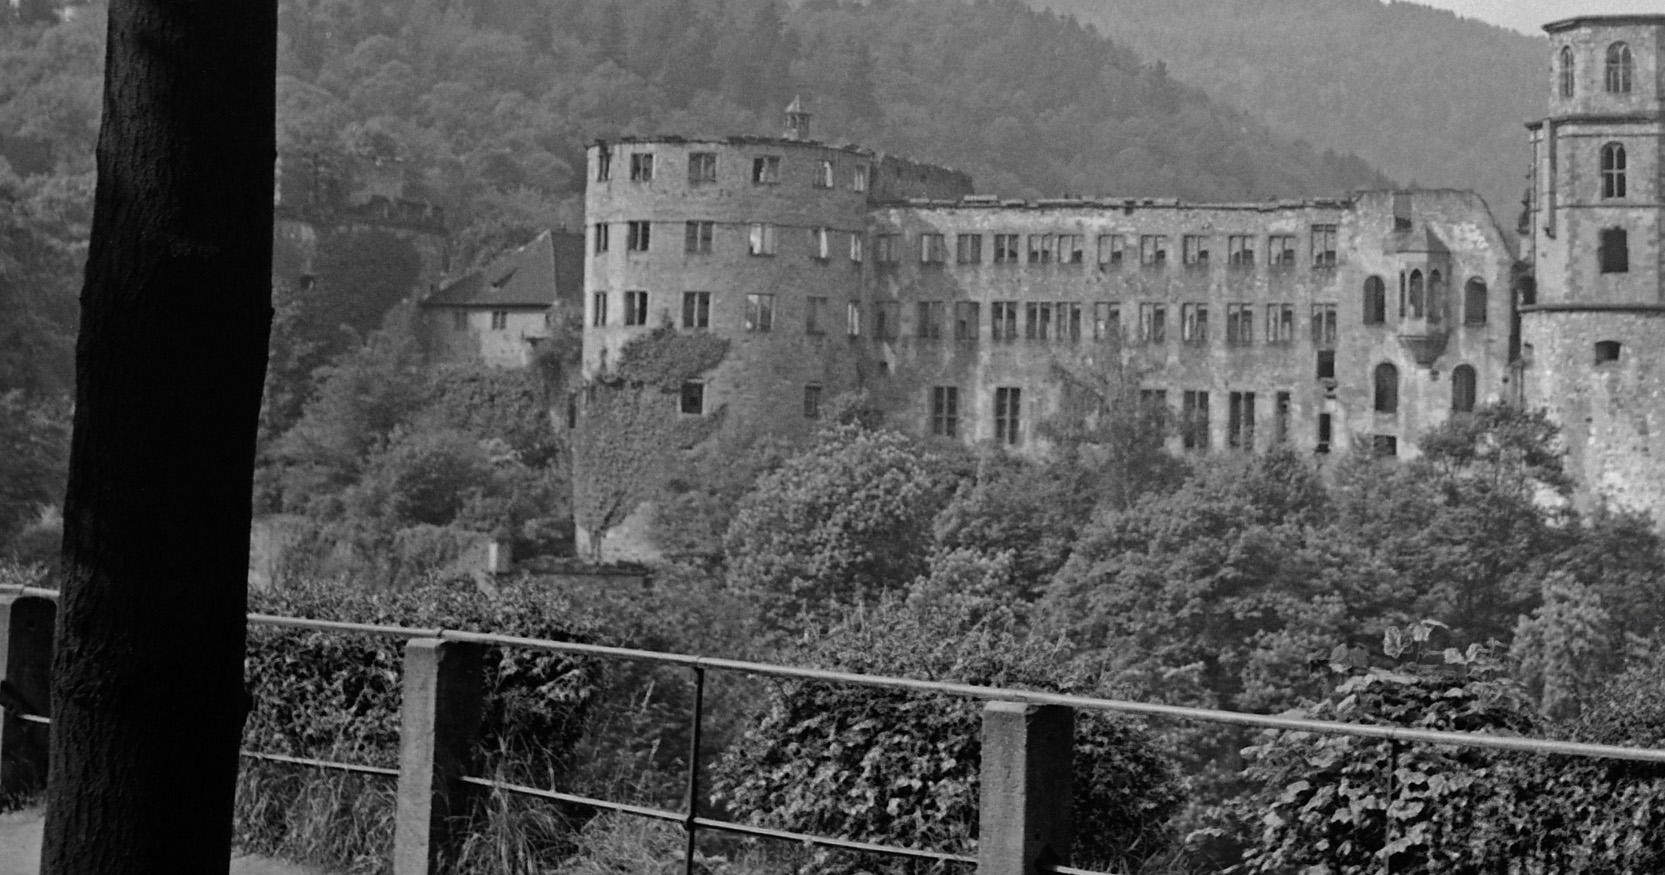 Grosse Scheffelterrasse-Terrassenterrace zum Schloss, Heidelberg, Deutschland 1938, bedruckt Später – Photograph von Karl Heinrich Lämmel